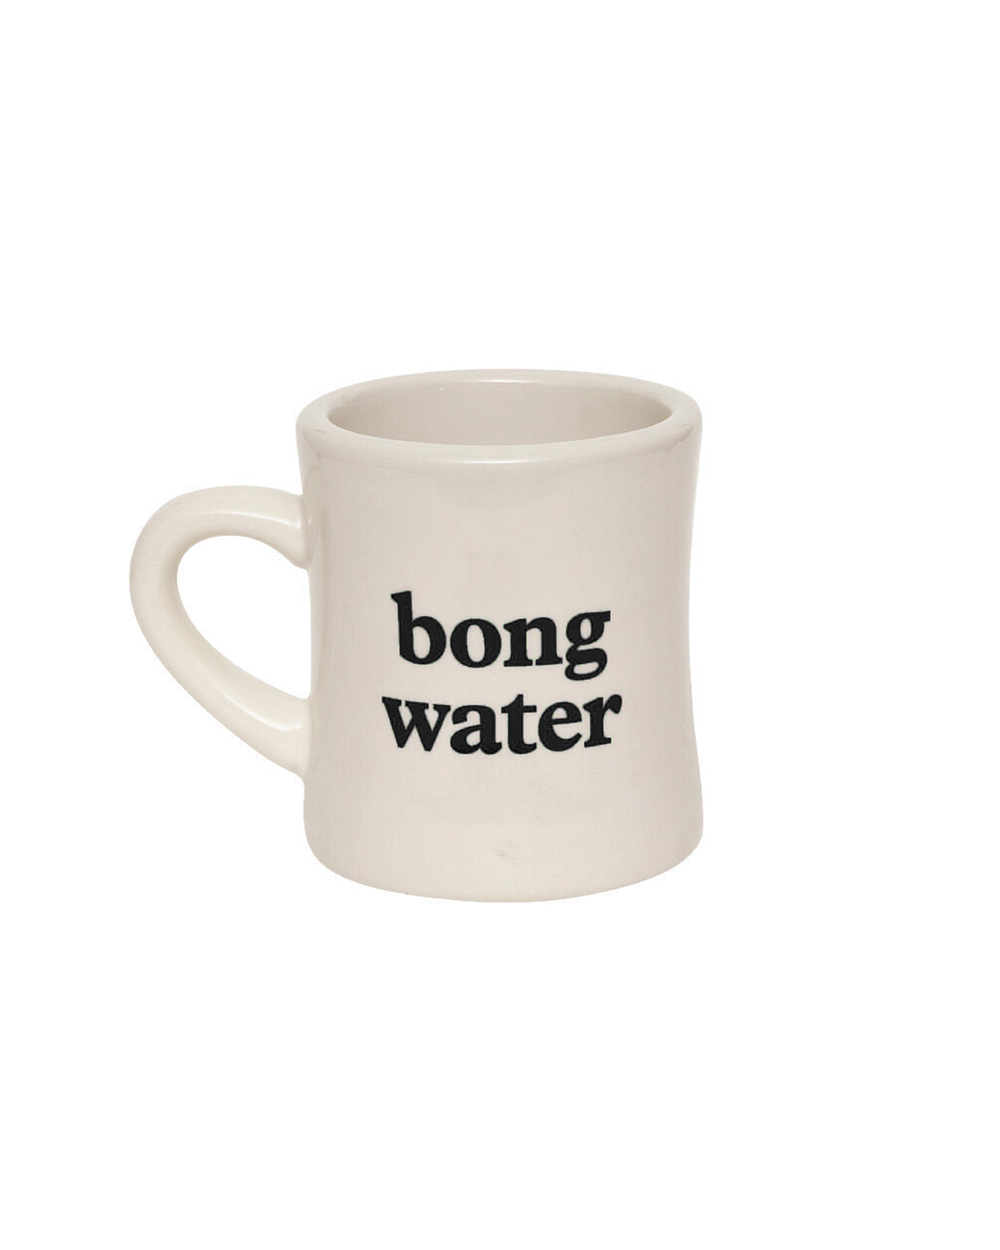 Bong Water Mug - Black